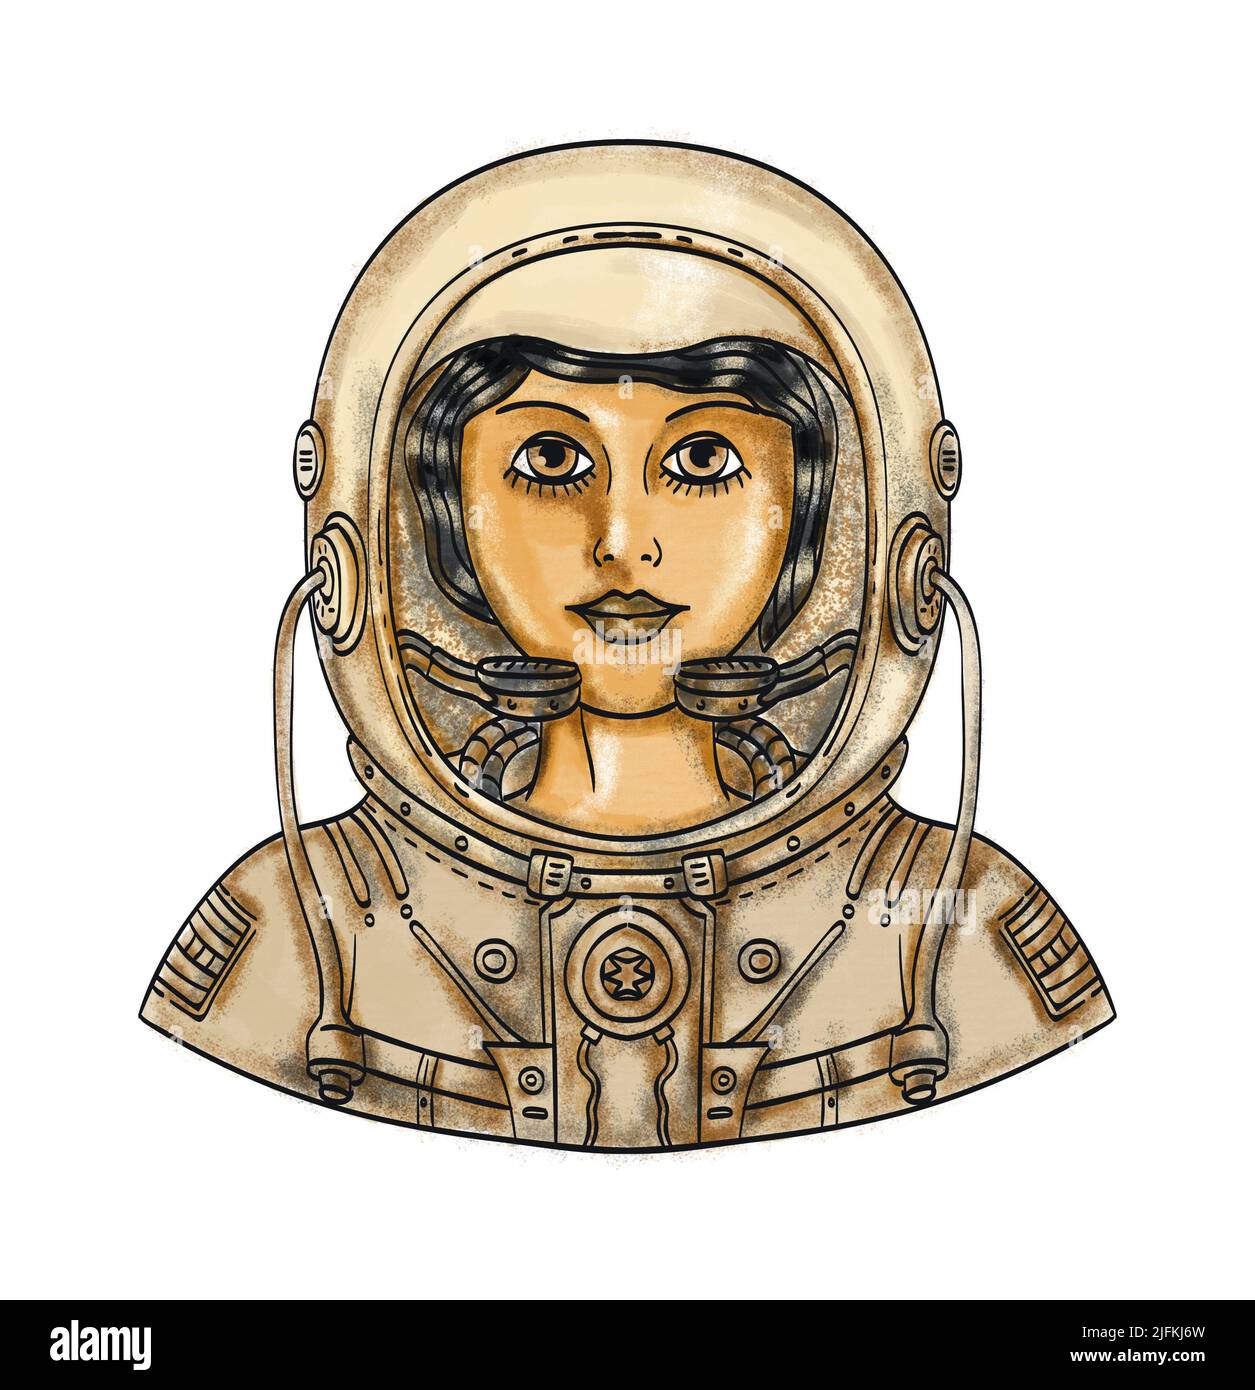 Casco de astronauta en el espacio con estilo de dibujo o dibujo a mano